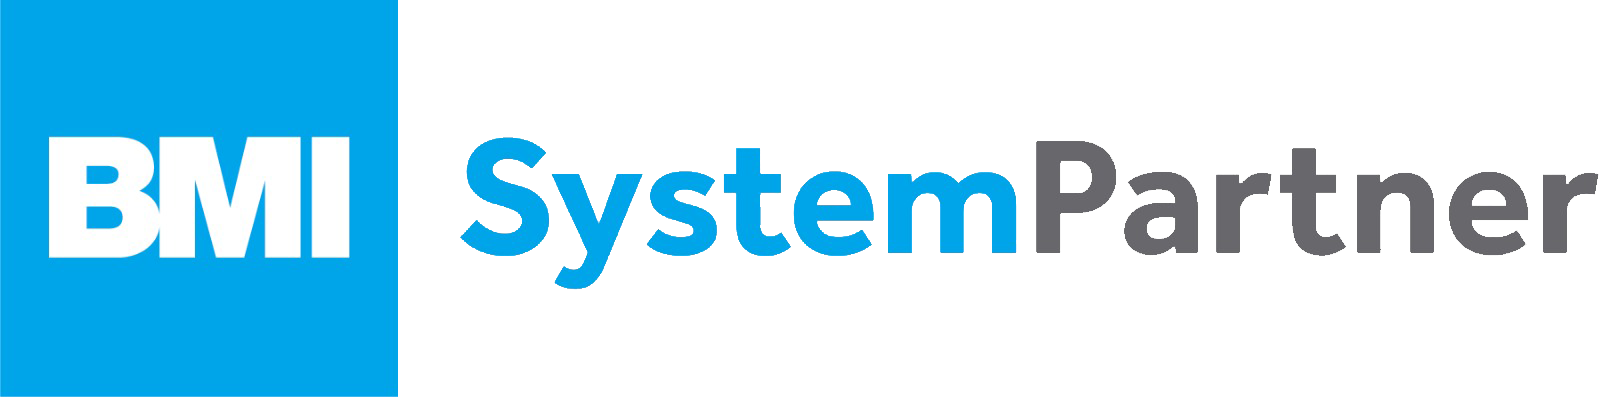 BMI System Partner